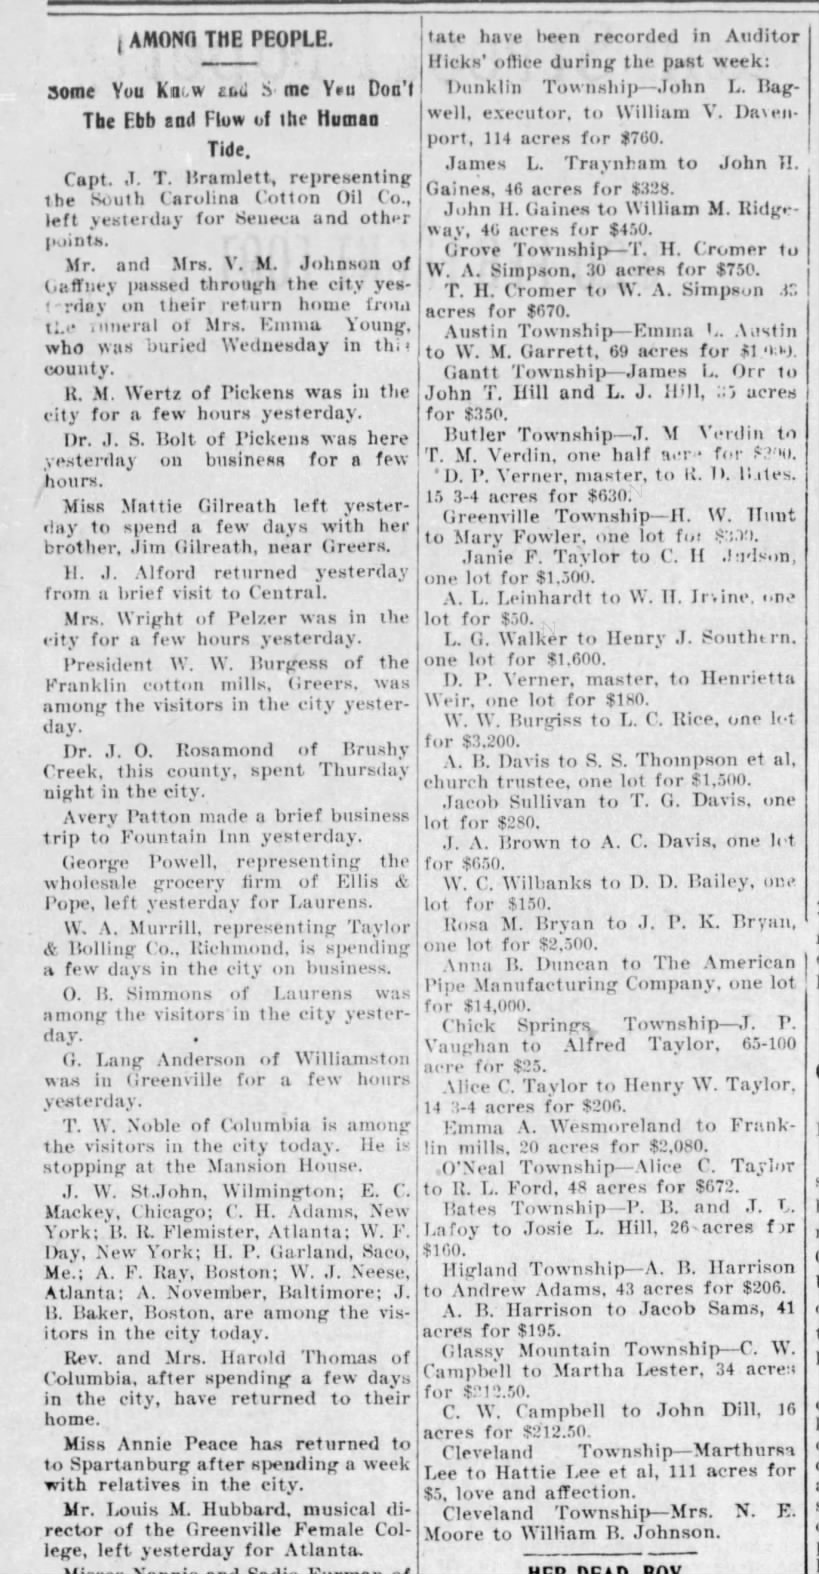 "Among the People" Social News 1901